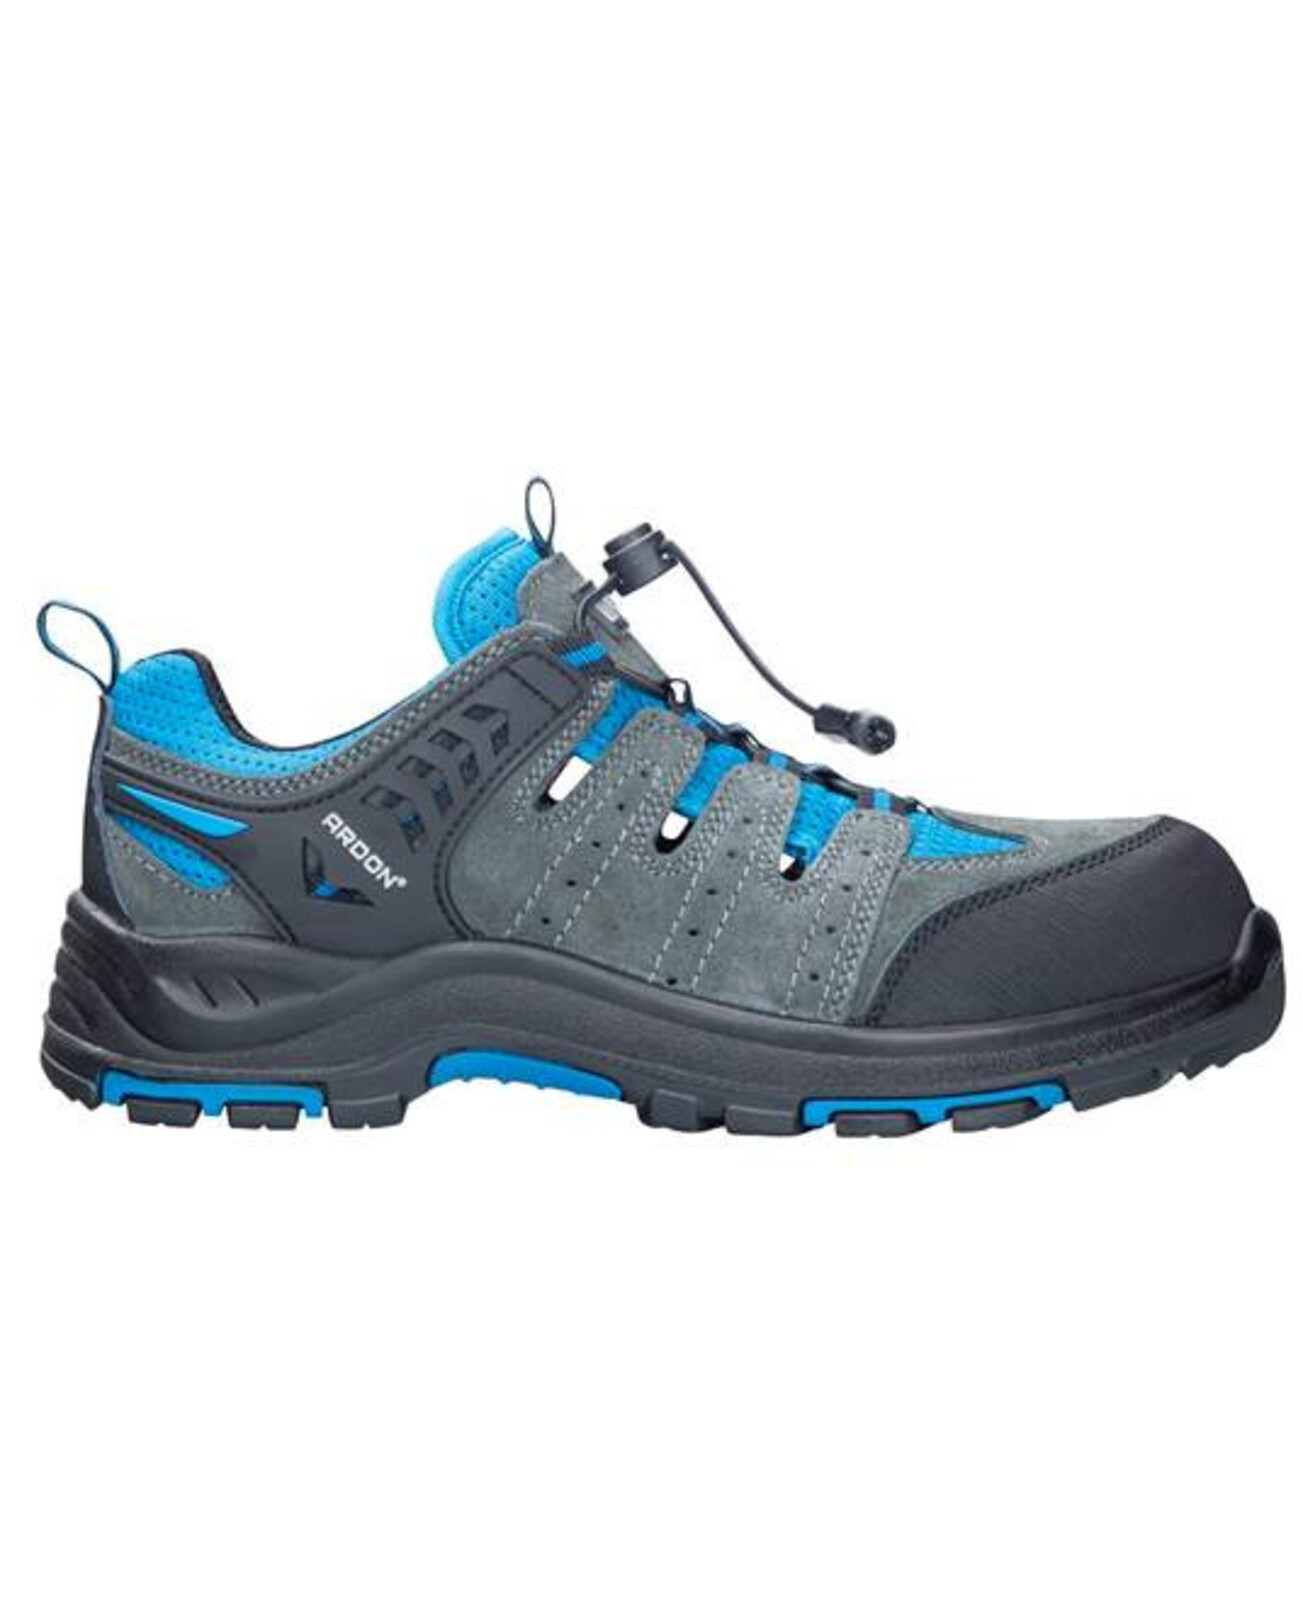 Bezpečnostná obuv ARDON®TRIMMER S1P  - veľkosť: 37, farba: sivá/modrá